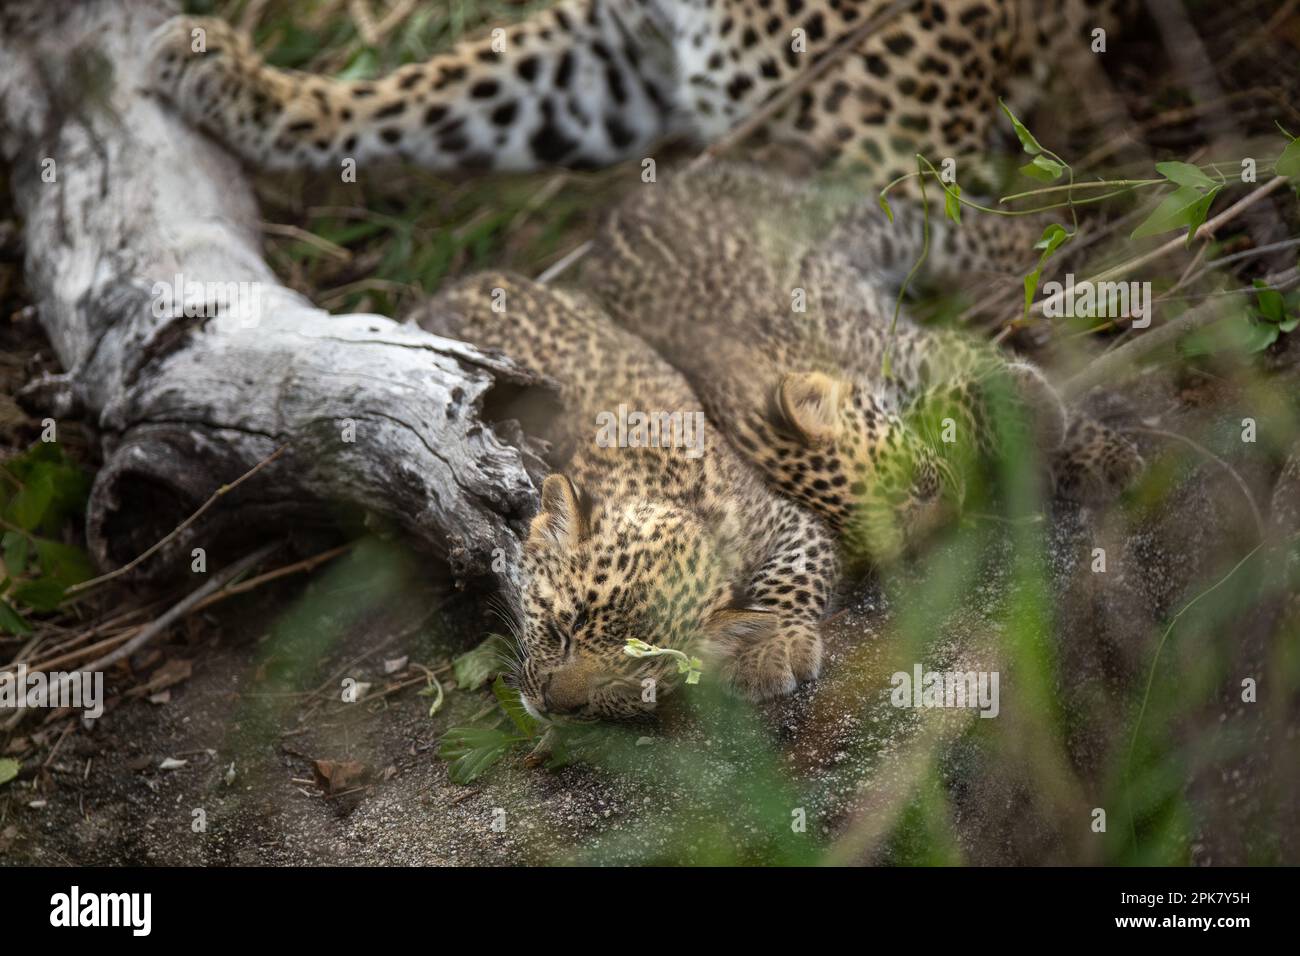 Zwei Leopardenjungen, Panthera Pardus, liegen mit ihrer Mutter im Bett. Stockfoto